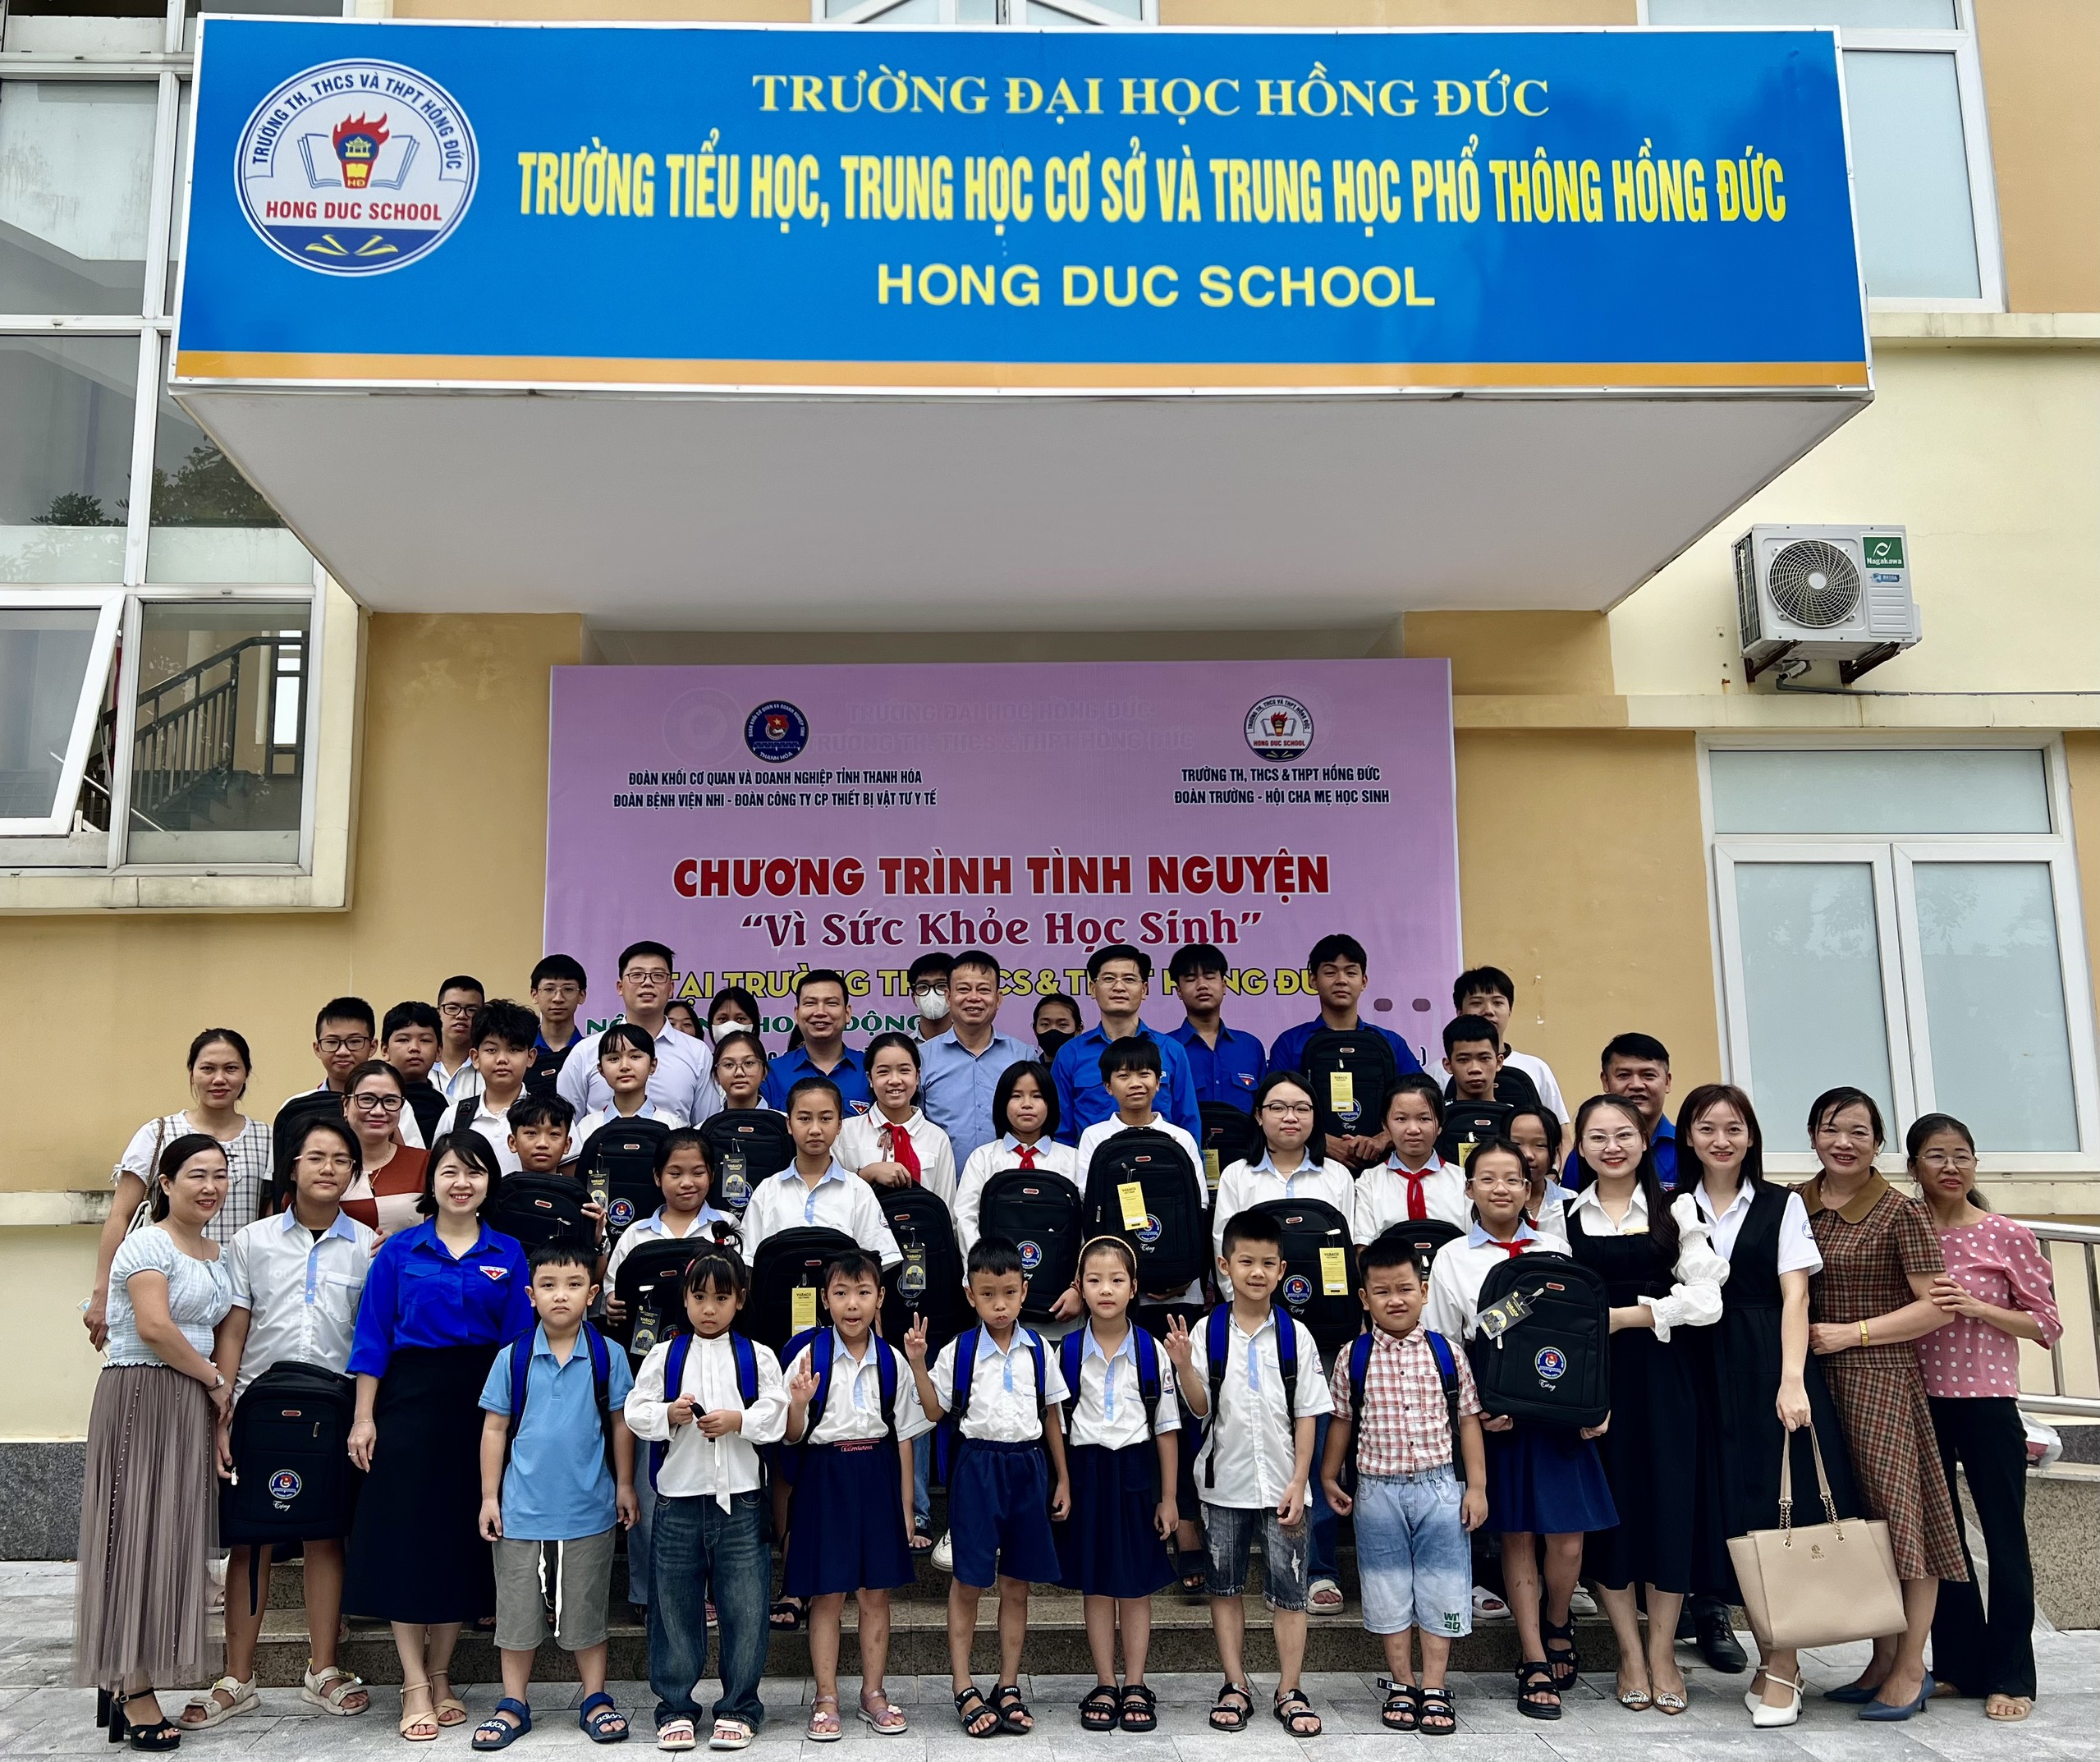 Đoàn Khối Cơ quan và Doanh nghiệp tỉnh tổ chức chương trình tình nguyện  “Vì sức khỏe học sinh” tại trường TH-THCS-THPT Hồng Đức